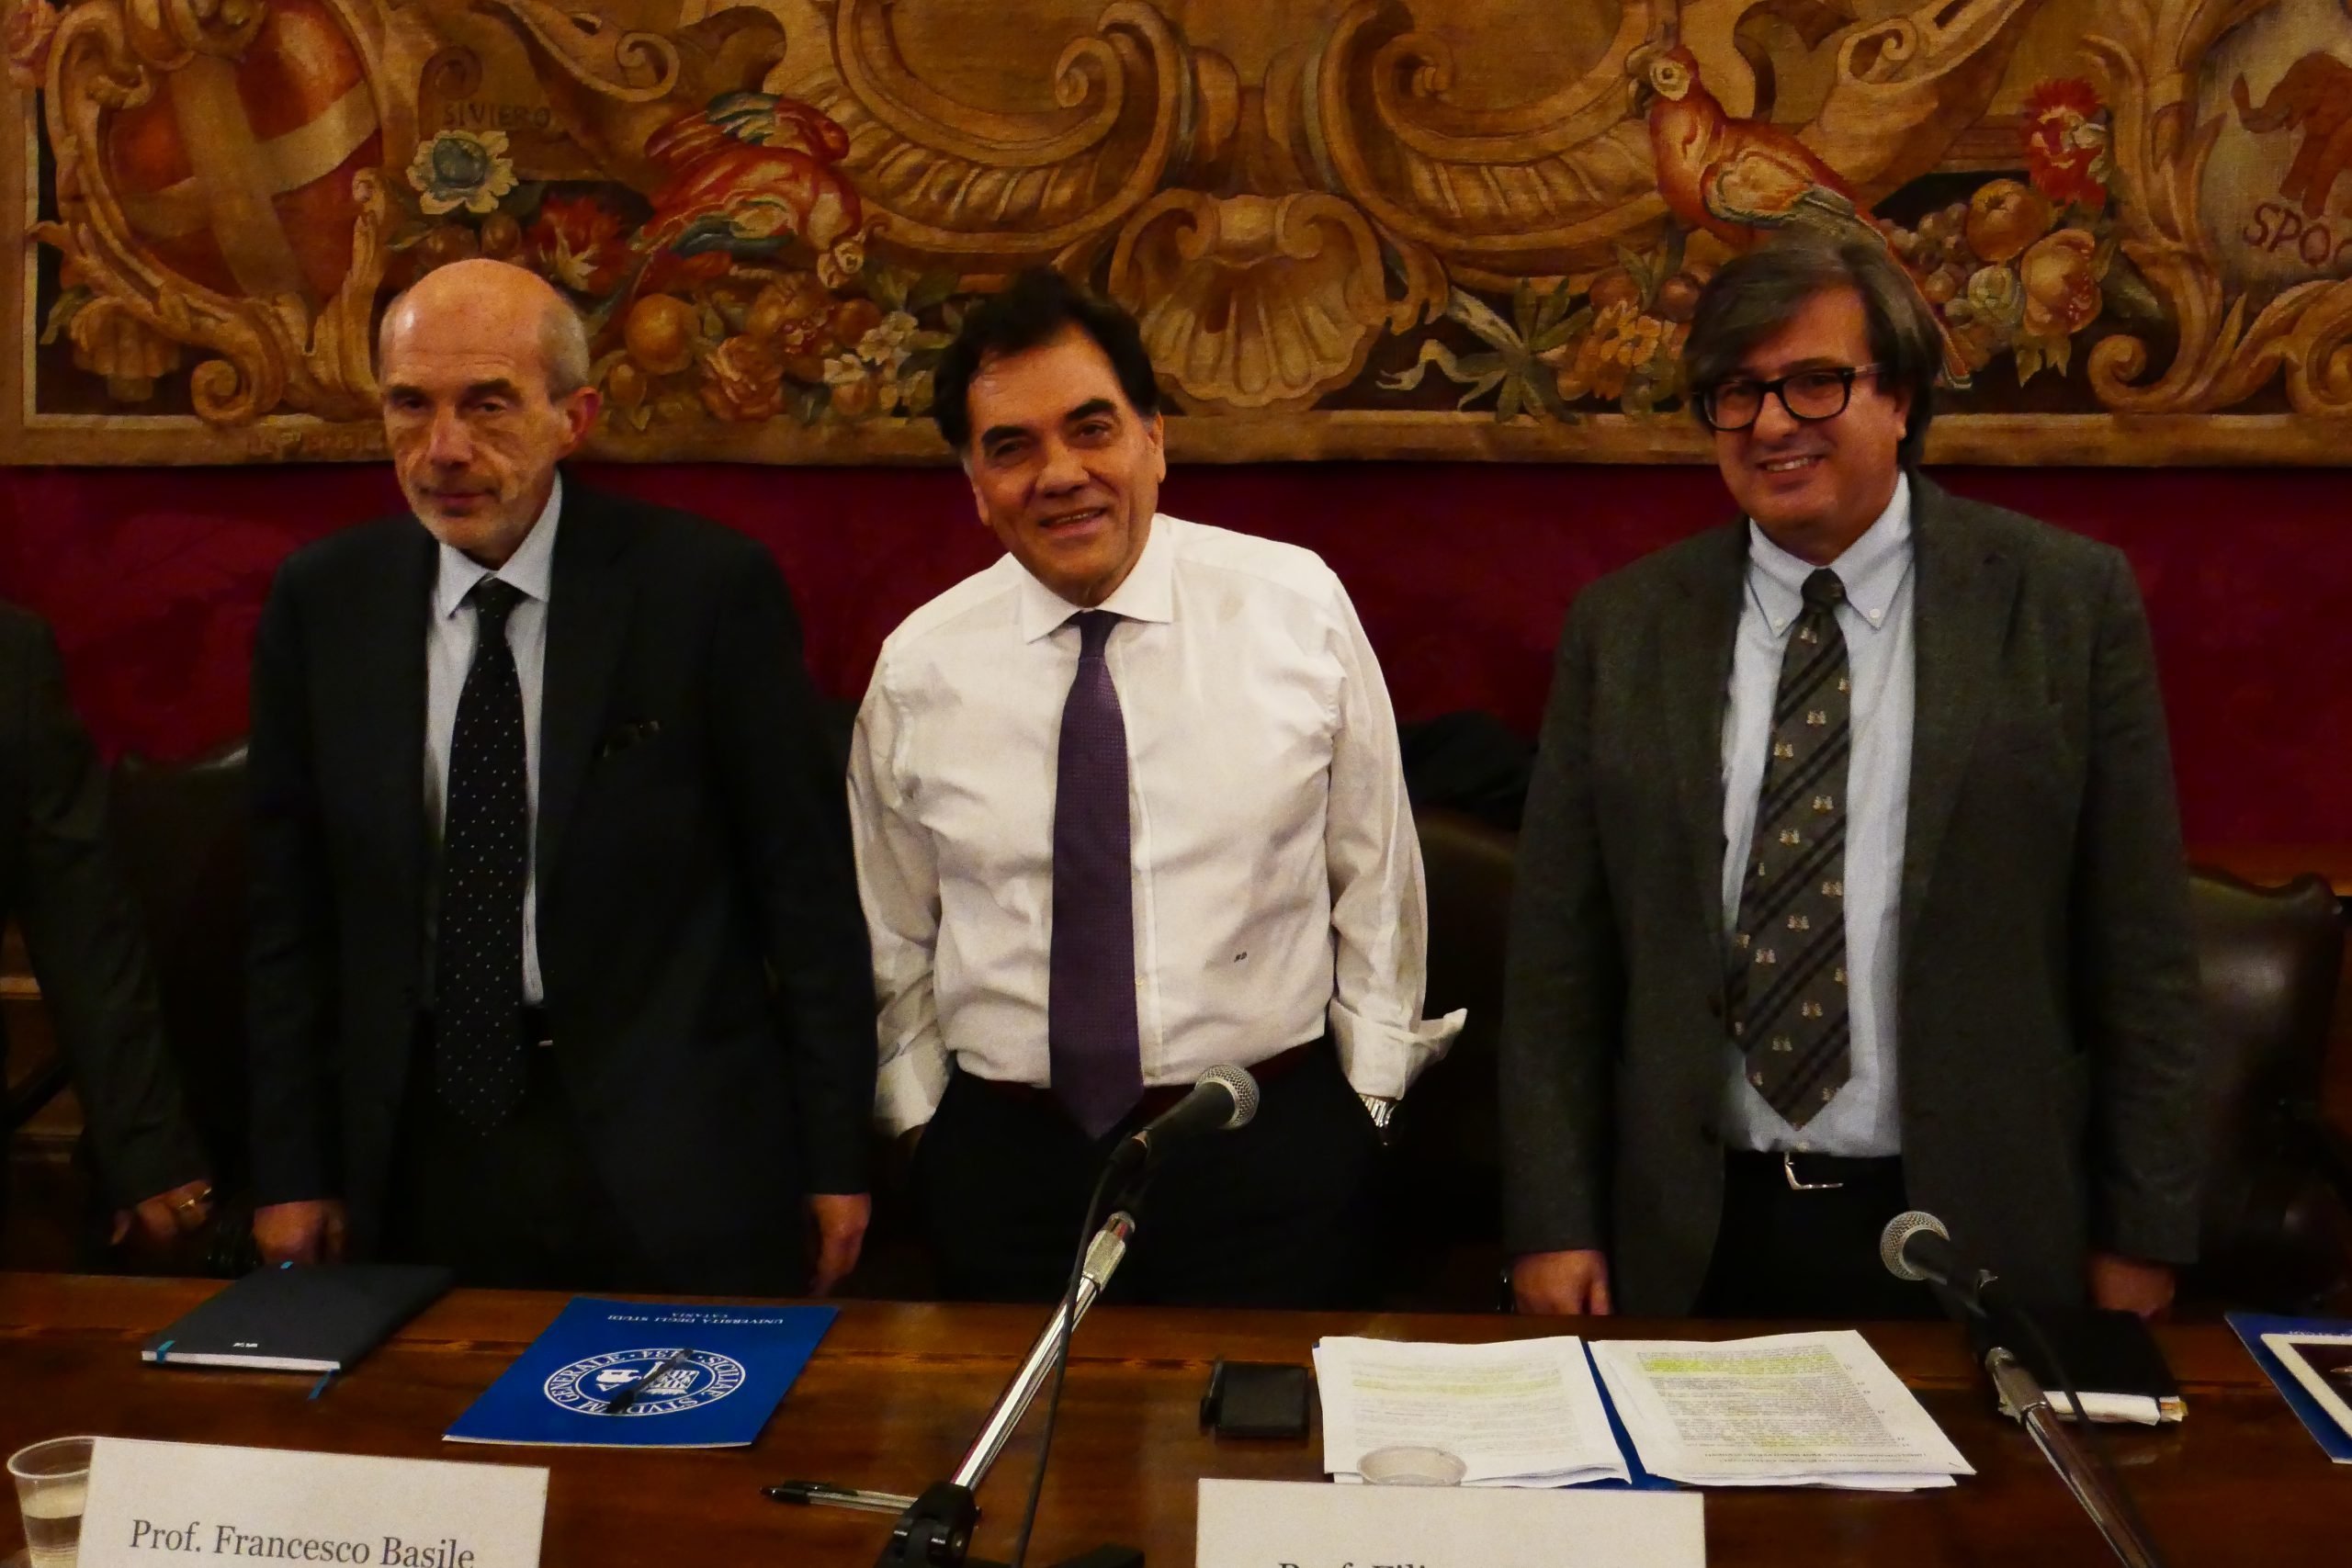 Da sinistra: Francesco Basile, Filippo Drago, Enrico Foti